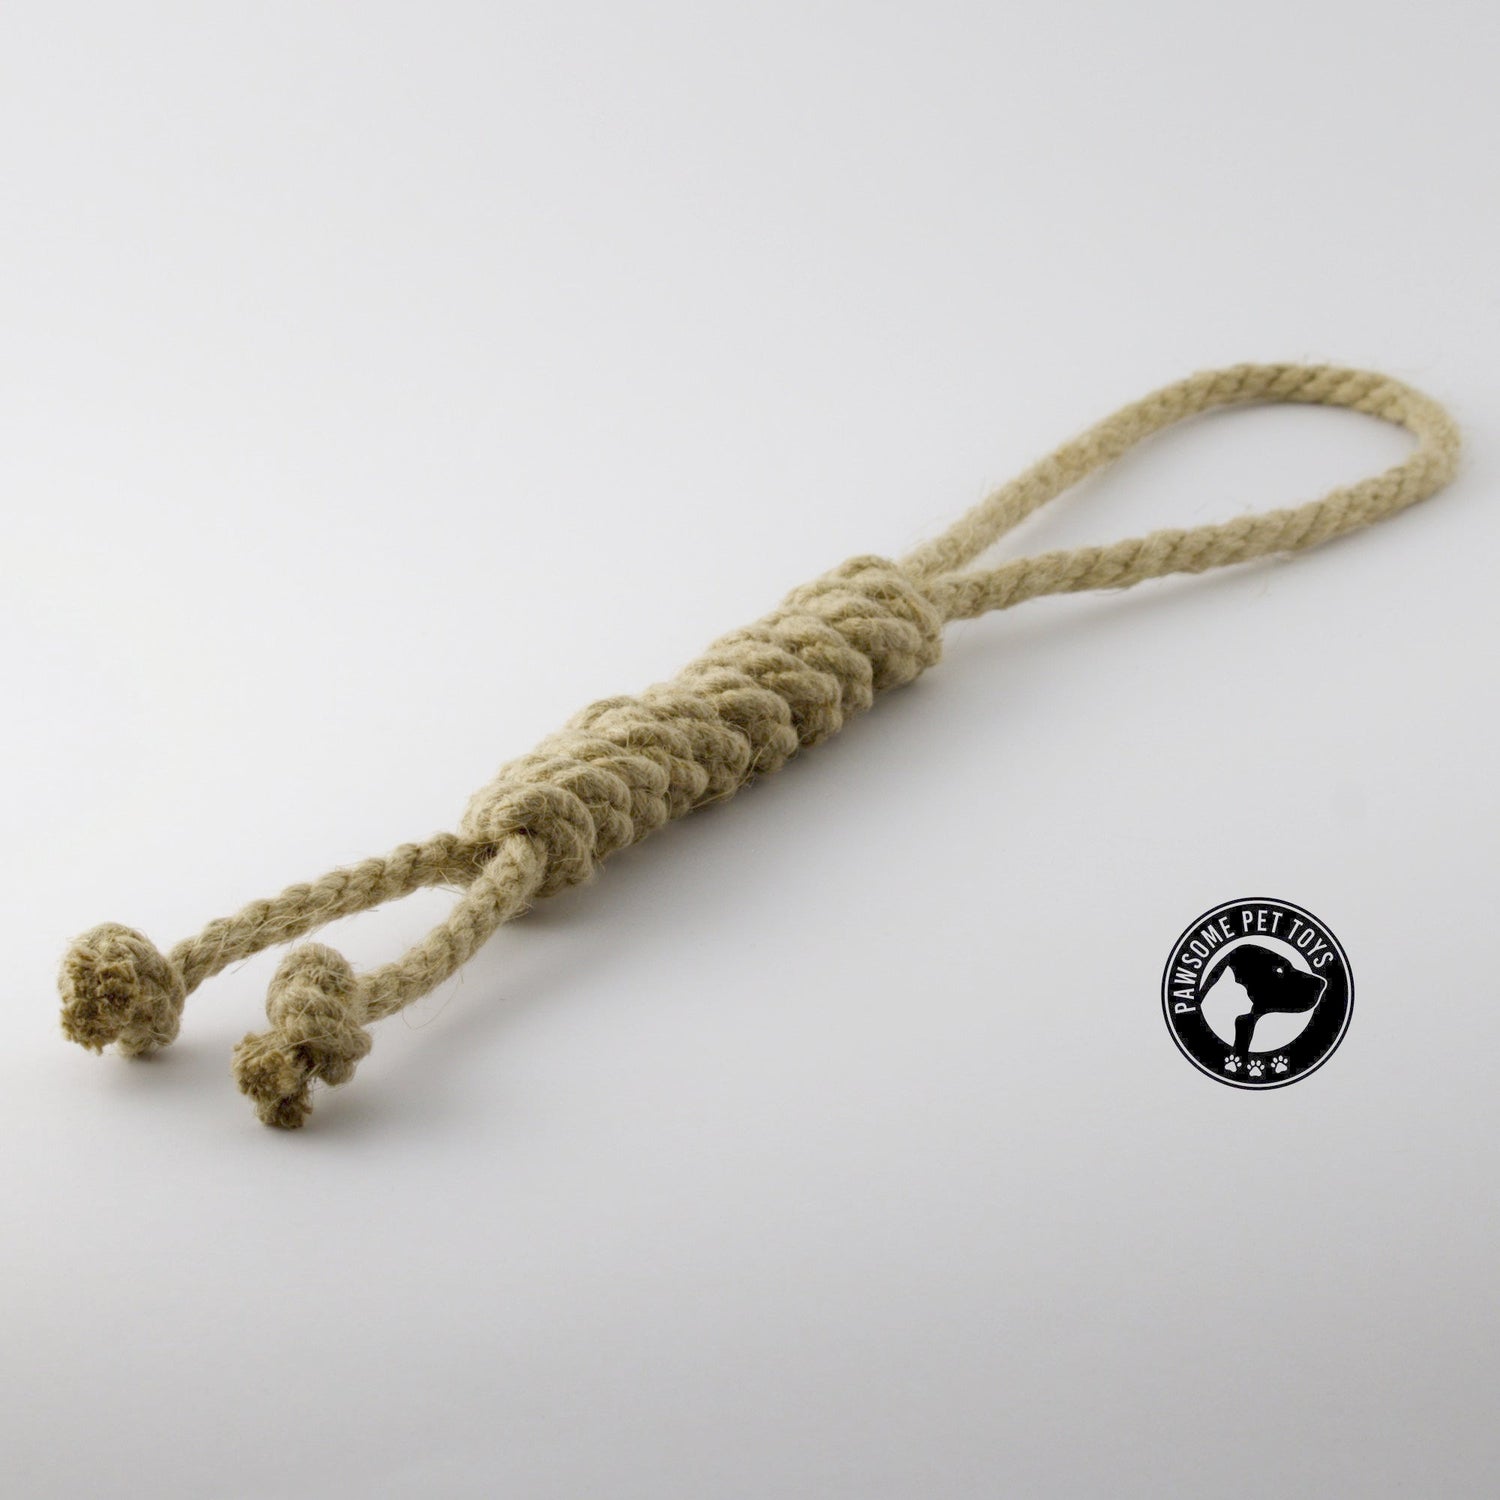 robust hemp rope dog toy